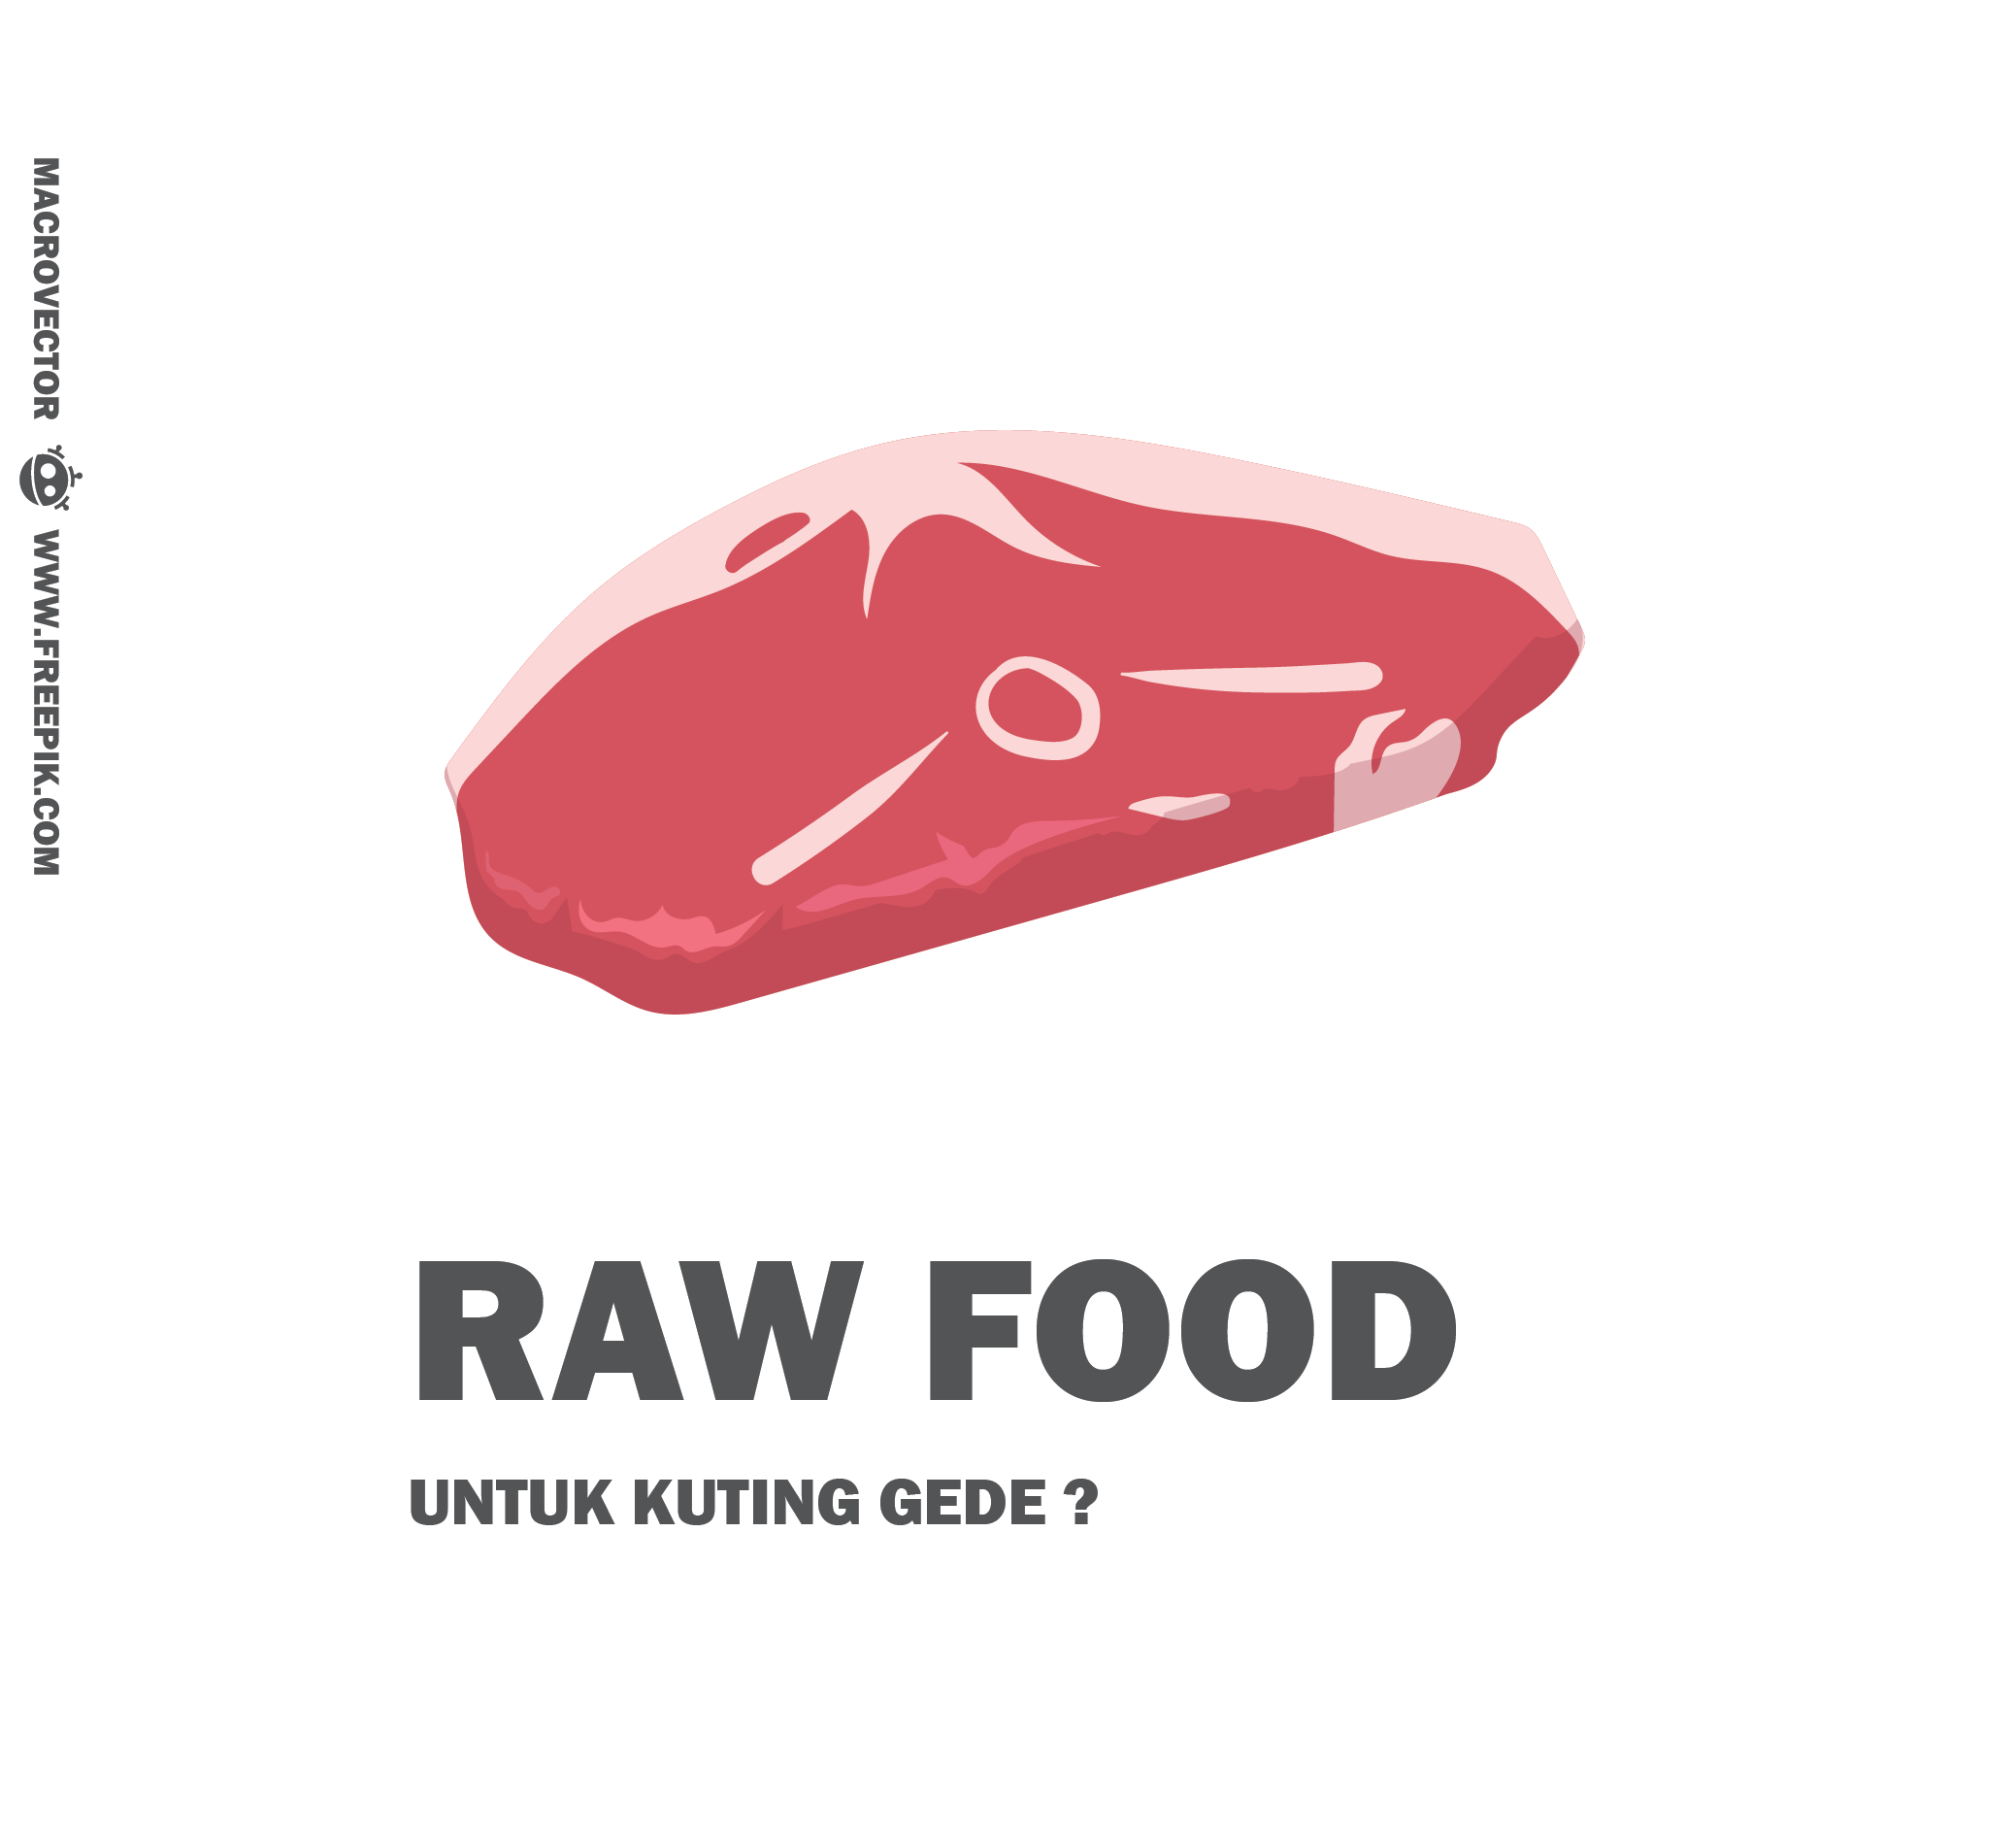 amankah memberi raw food untuk kucing